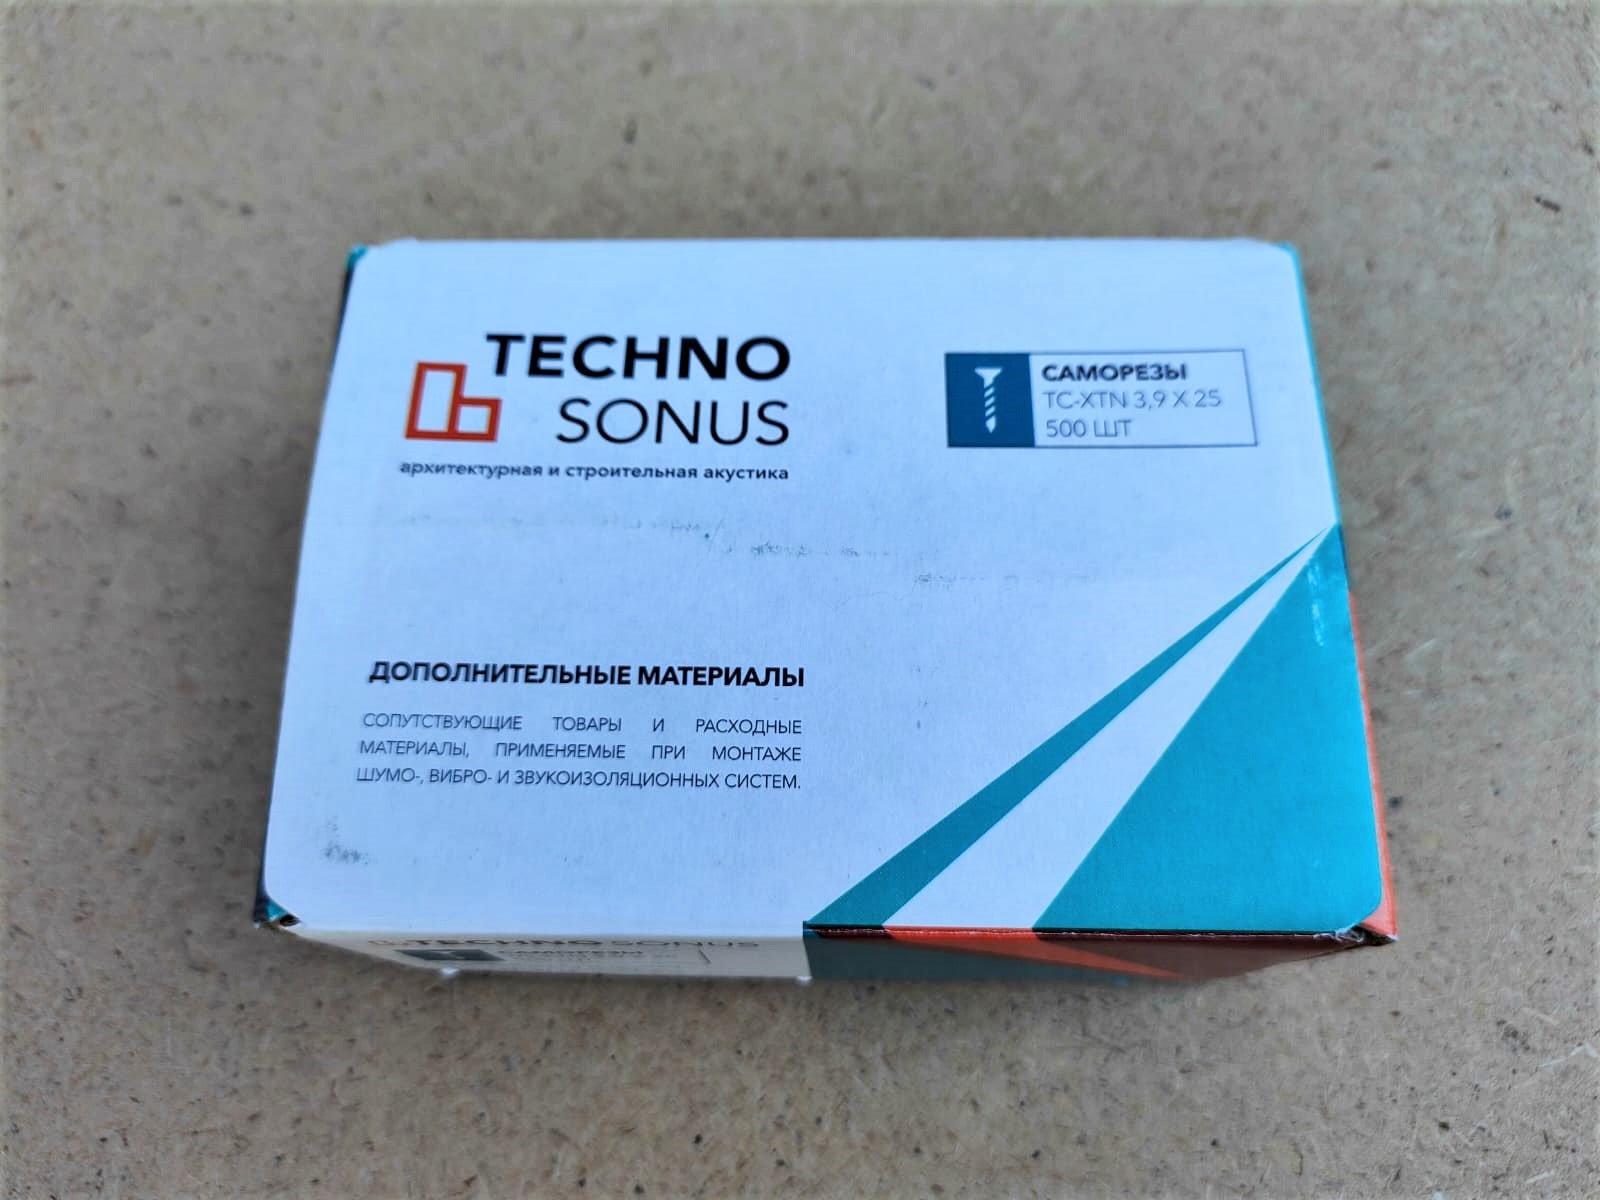 Саморезы TC-XTN 3,9х25 TECHNO SONUS (Техносонус) (500 шт)